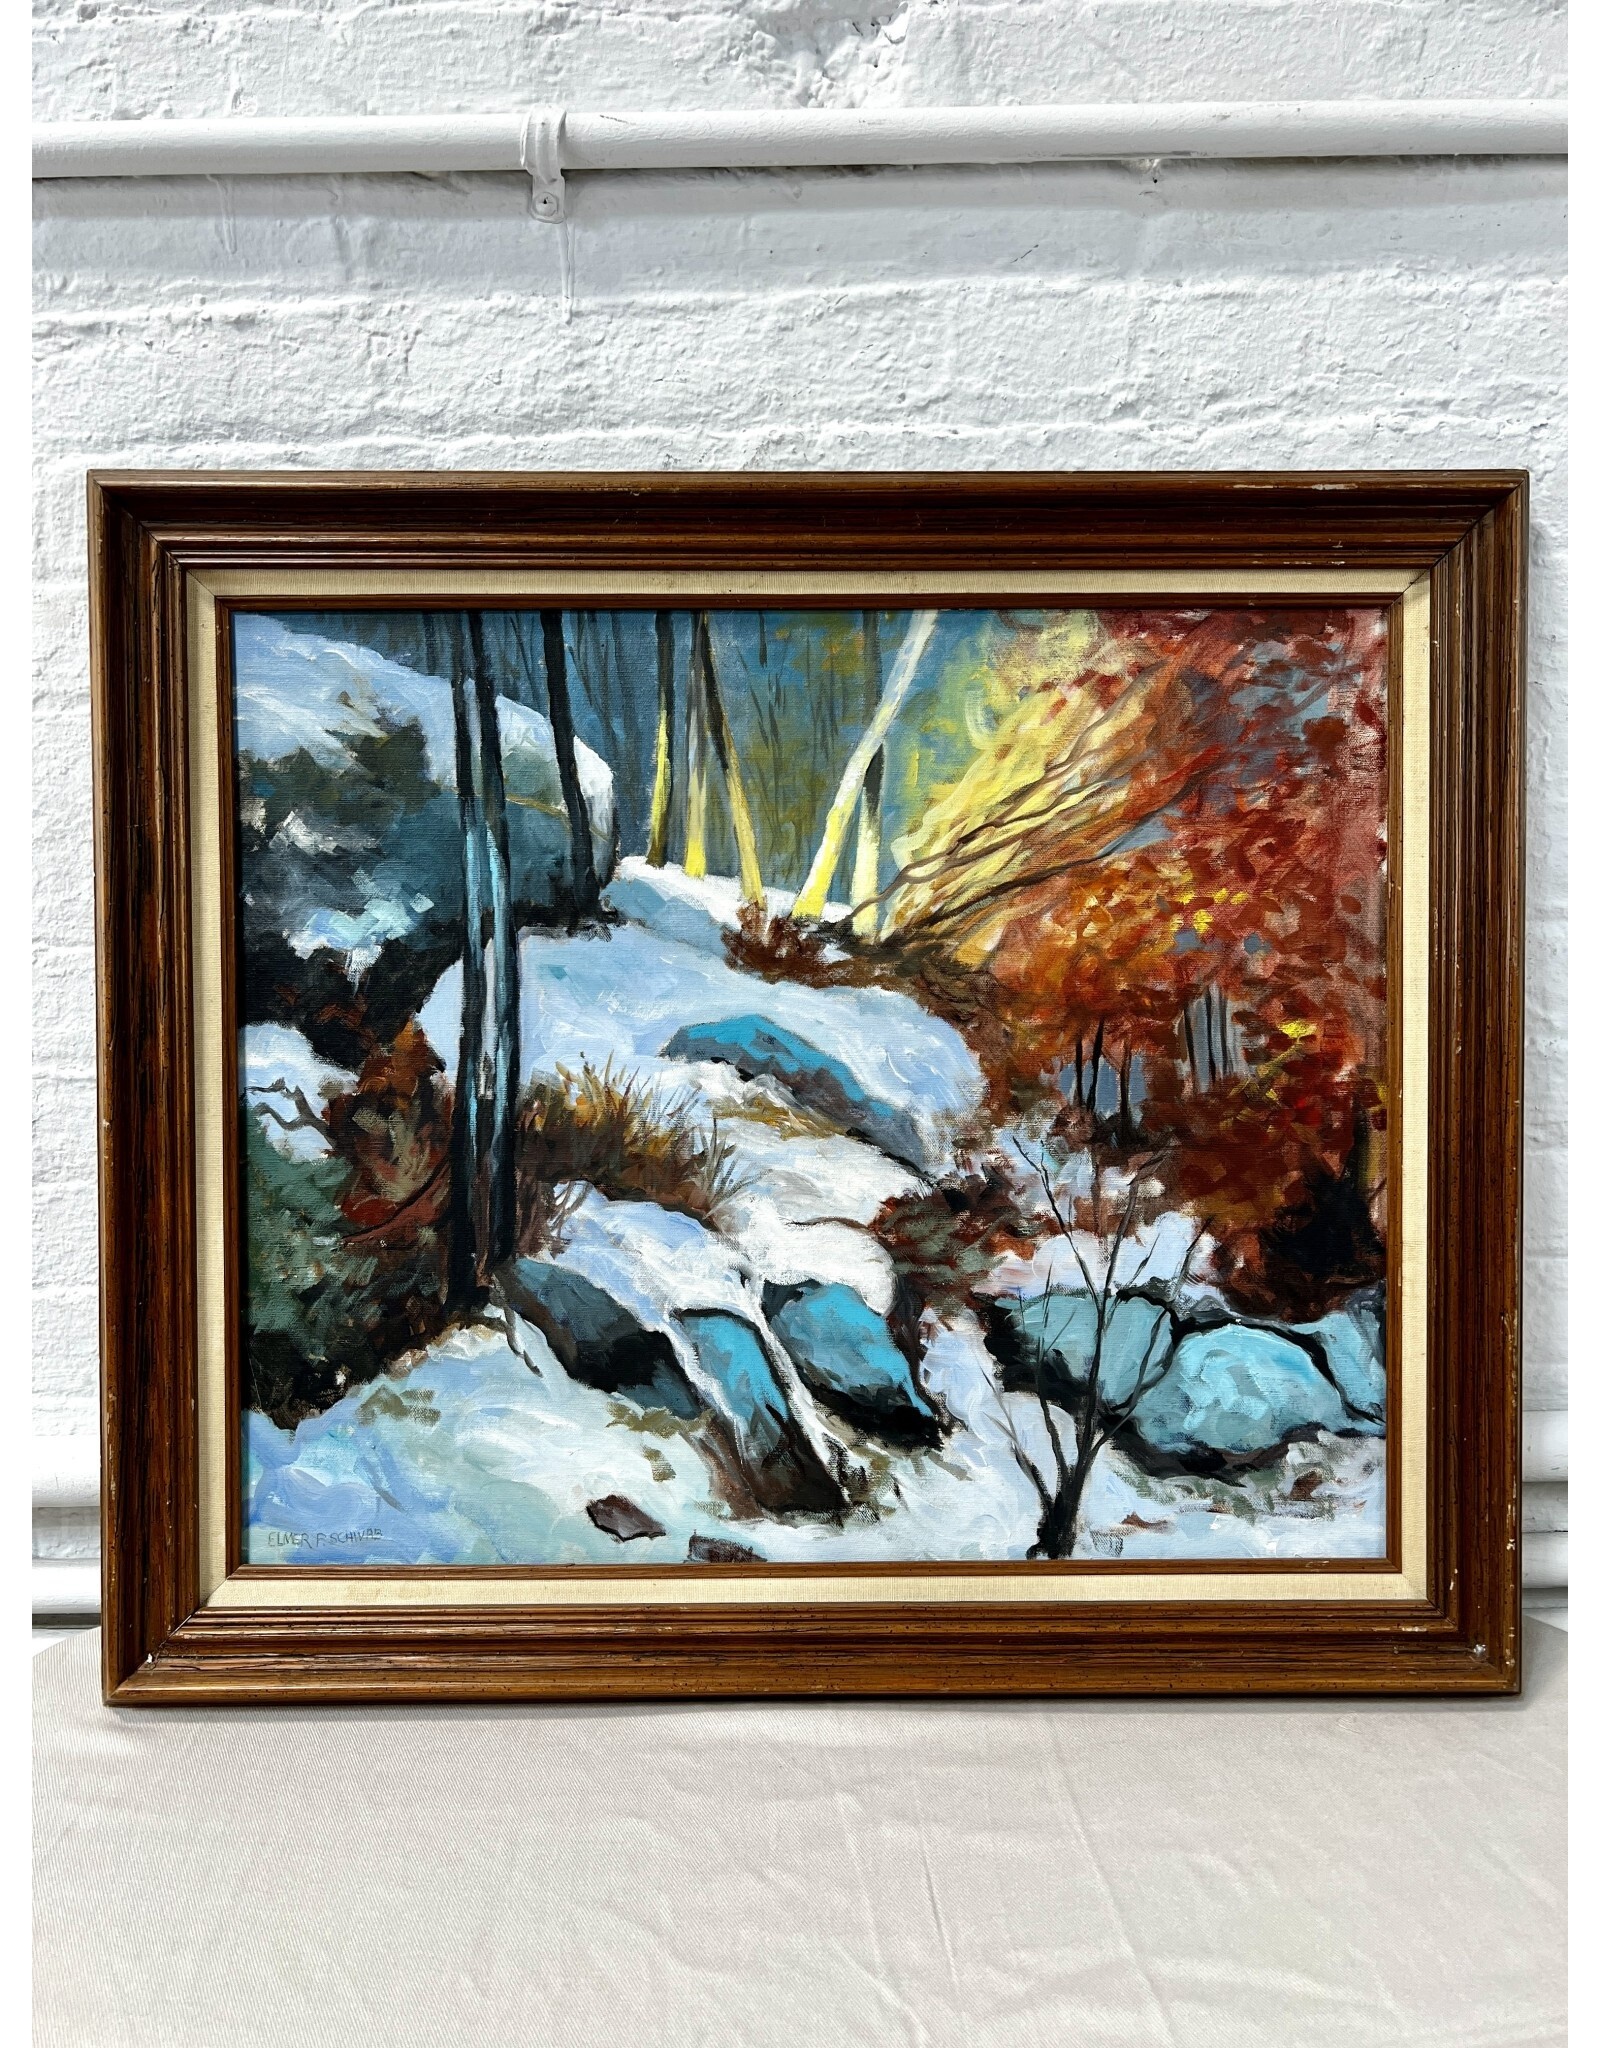 Daybreak, framed oil on canvas, sgnd Elmer F. Schivab